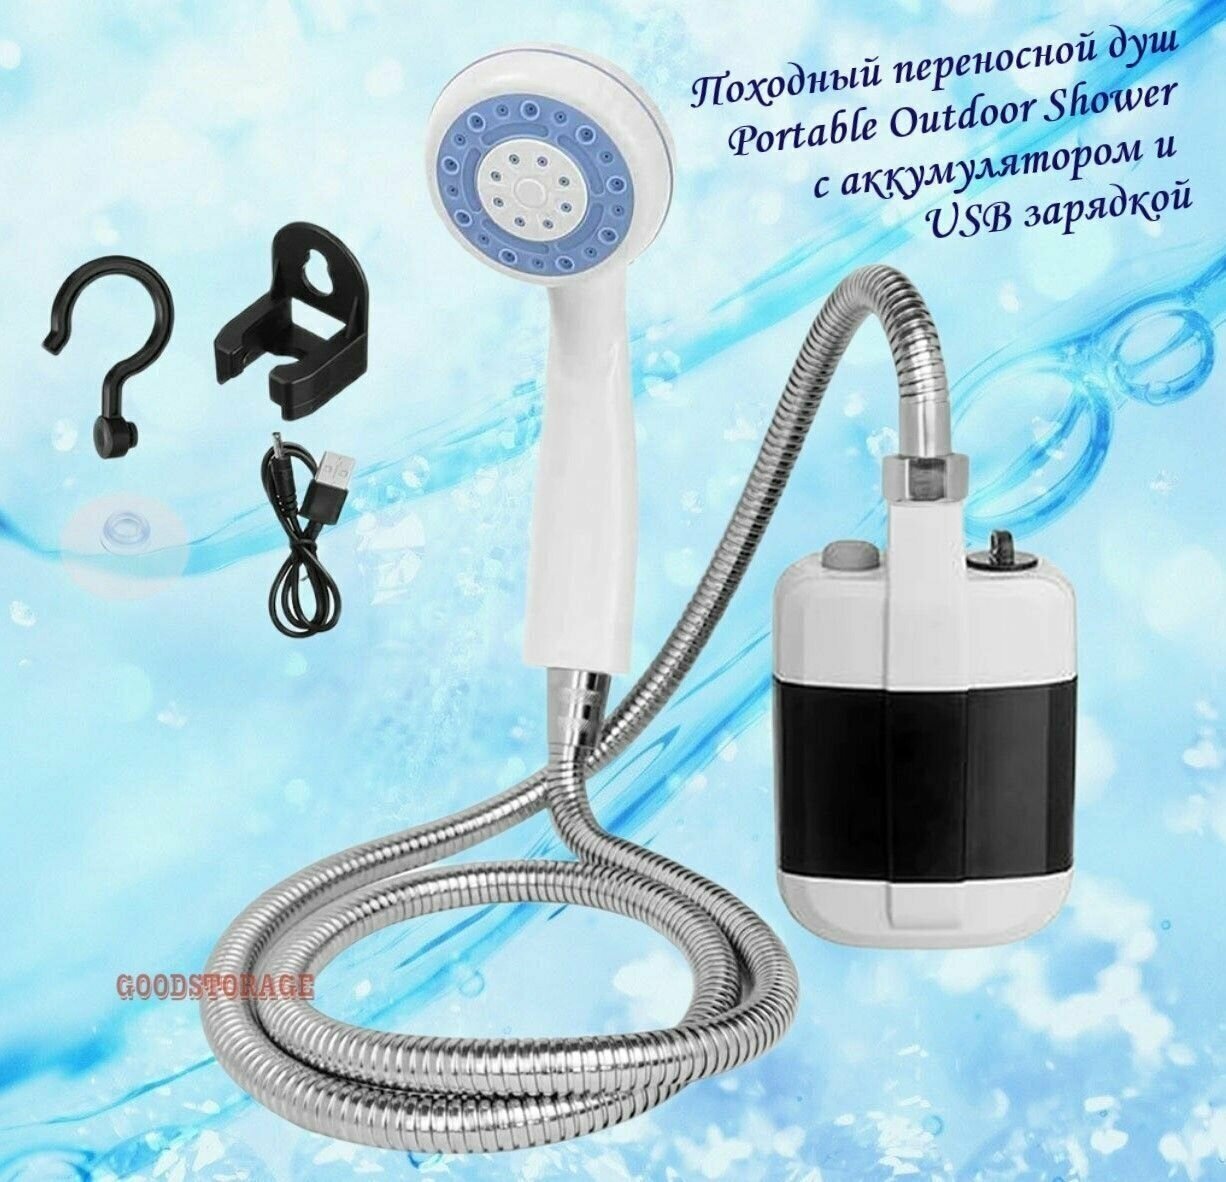 Походный переносной душ Portable Outdoor Shower с акуммулятором и USB зарядкой - фотография № 3